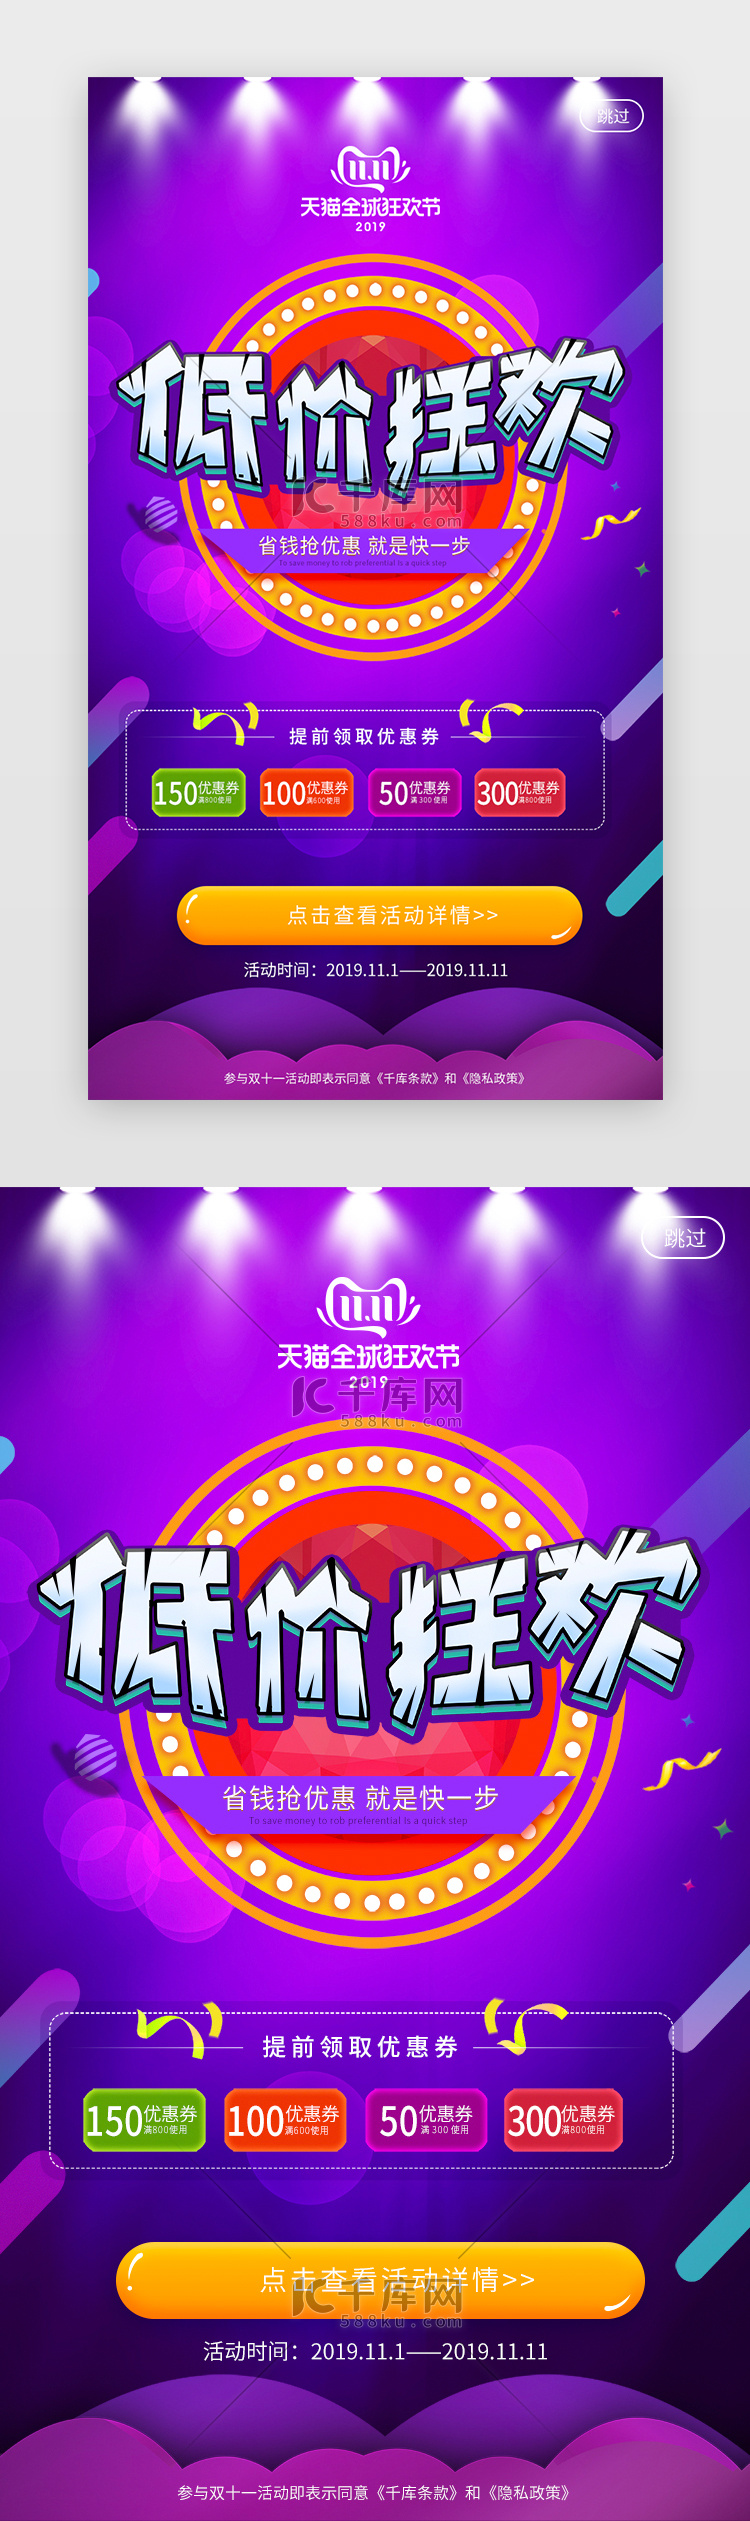 紫色系天猫优惠双十一促销app闪屏活动页